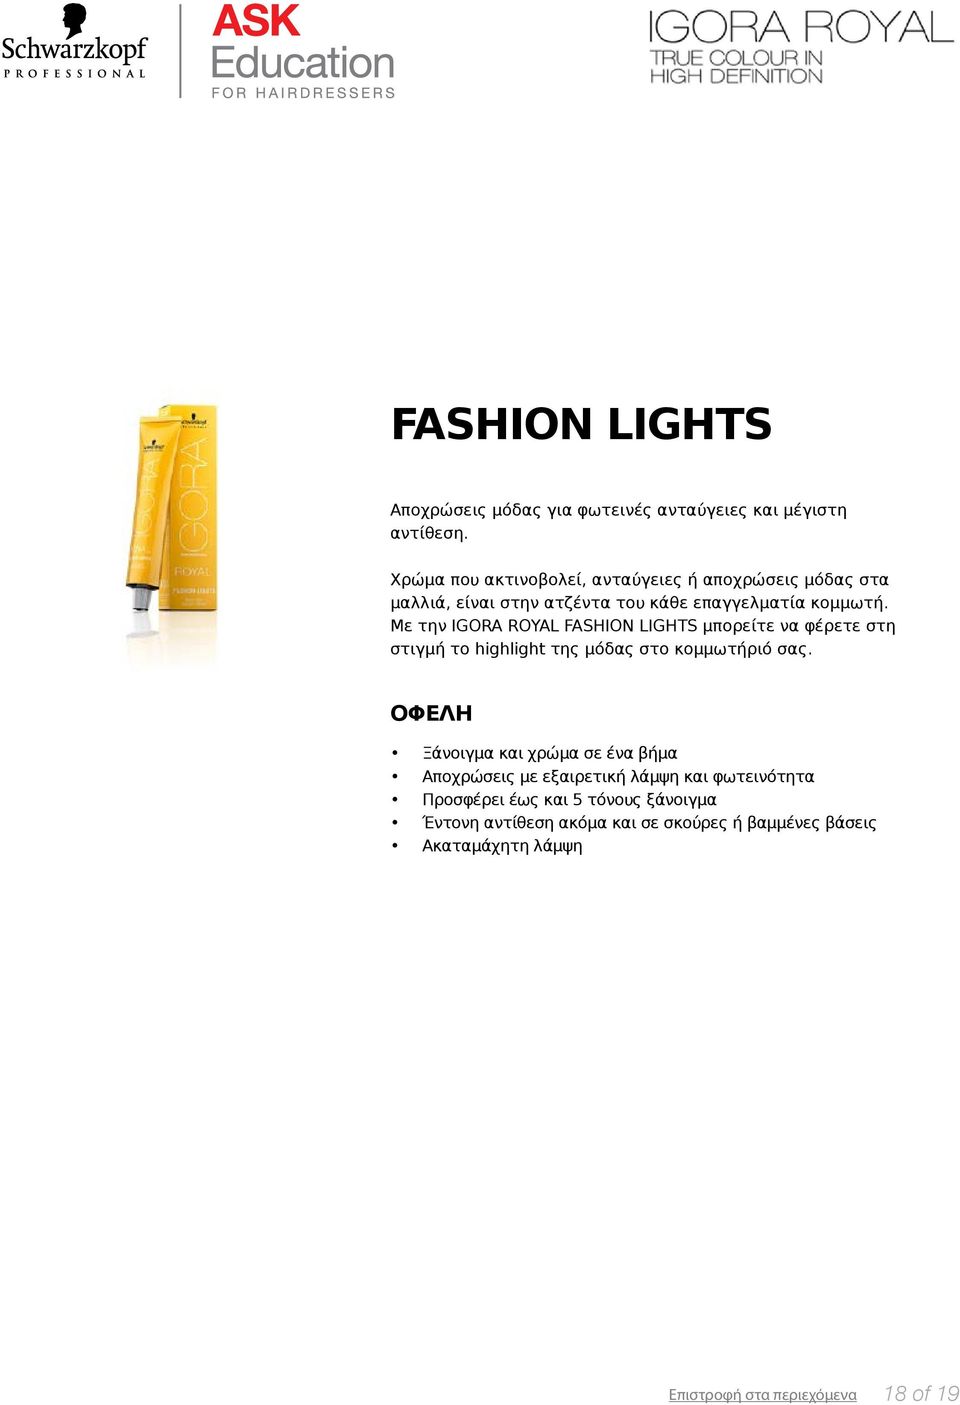 Με την IGORA ROYAL FASHION LIGHTS μπορείτε να φέρετε στη στιγμή το highlight της μόδας στο κομμωτήριό σας.